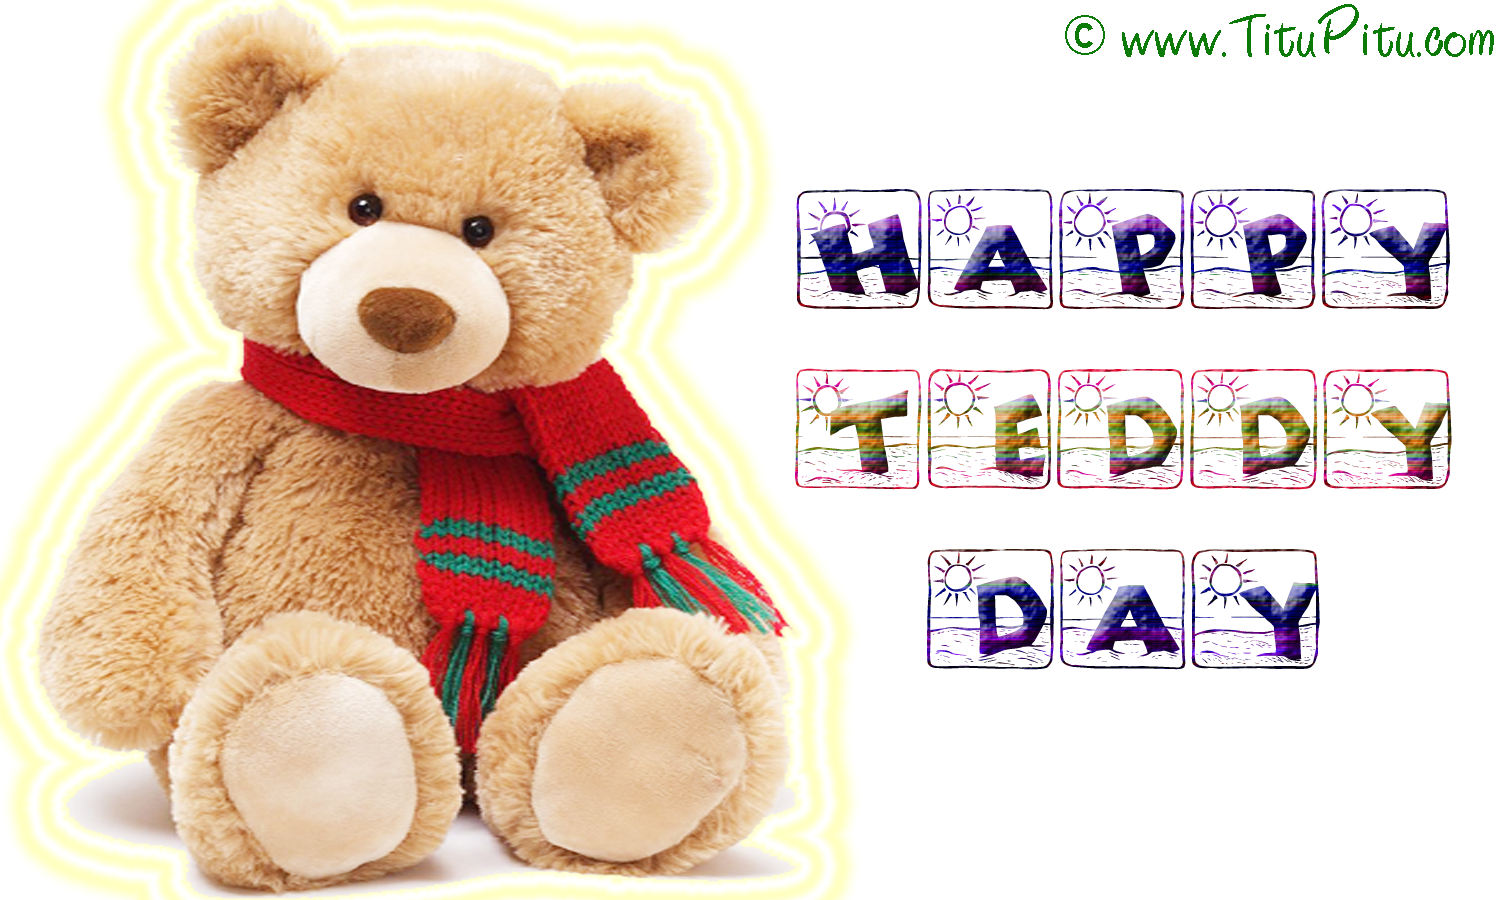 happy teddy day wallpaper,teddy bear,stuffed toy,toy,plush,bear